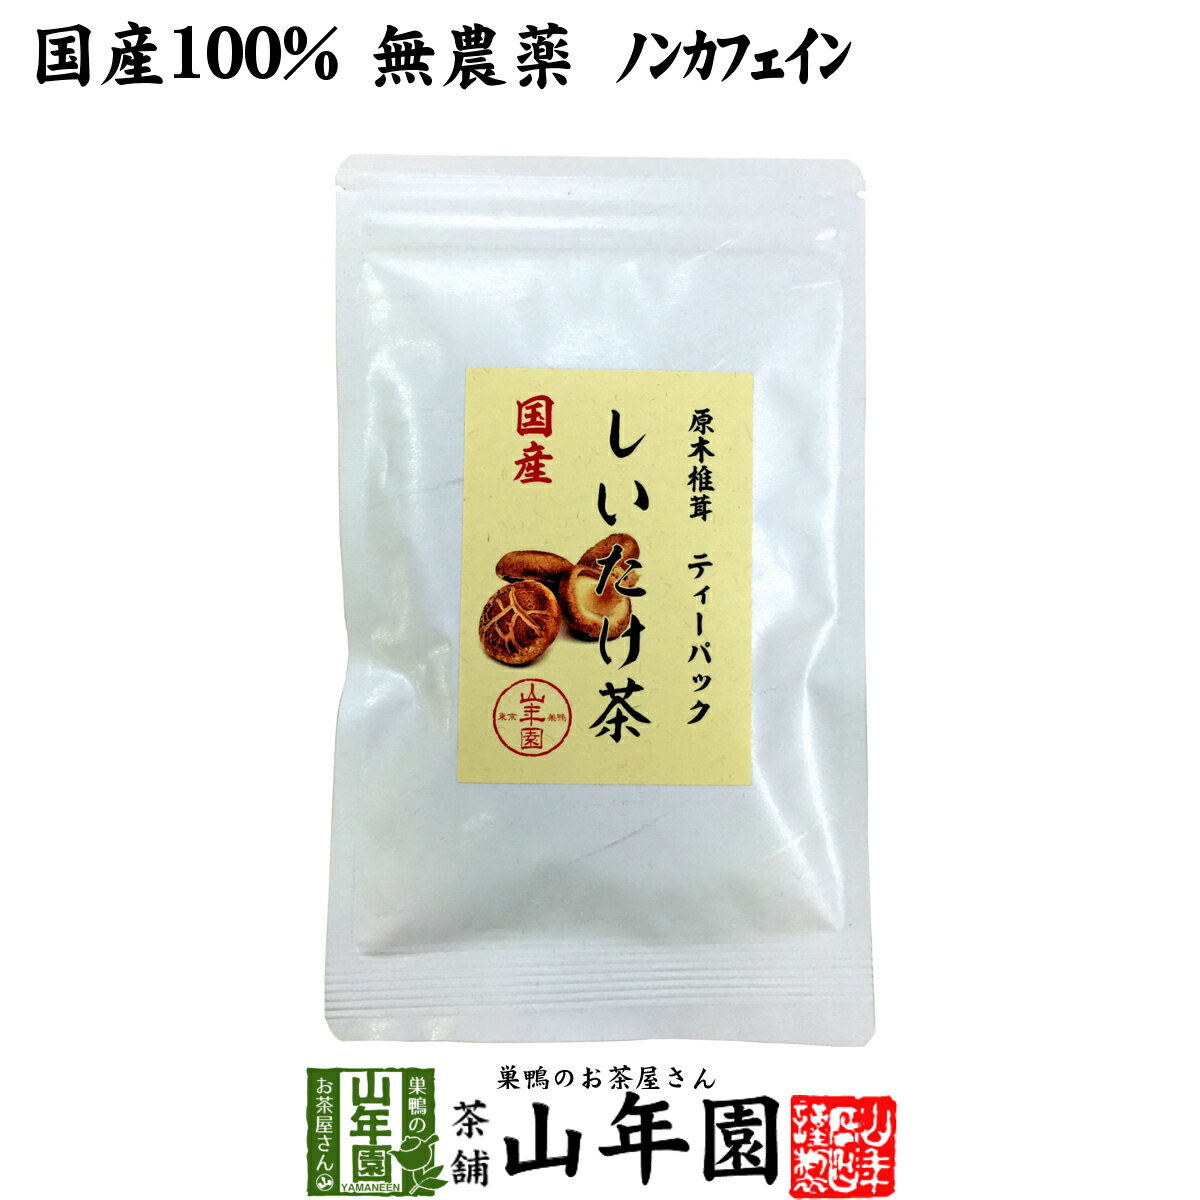 山年園『原木椎茸ティーパック国産しいたけ茶』